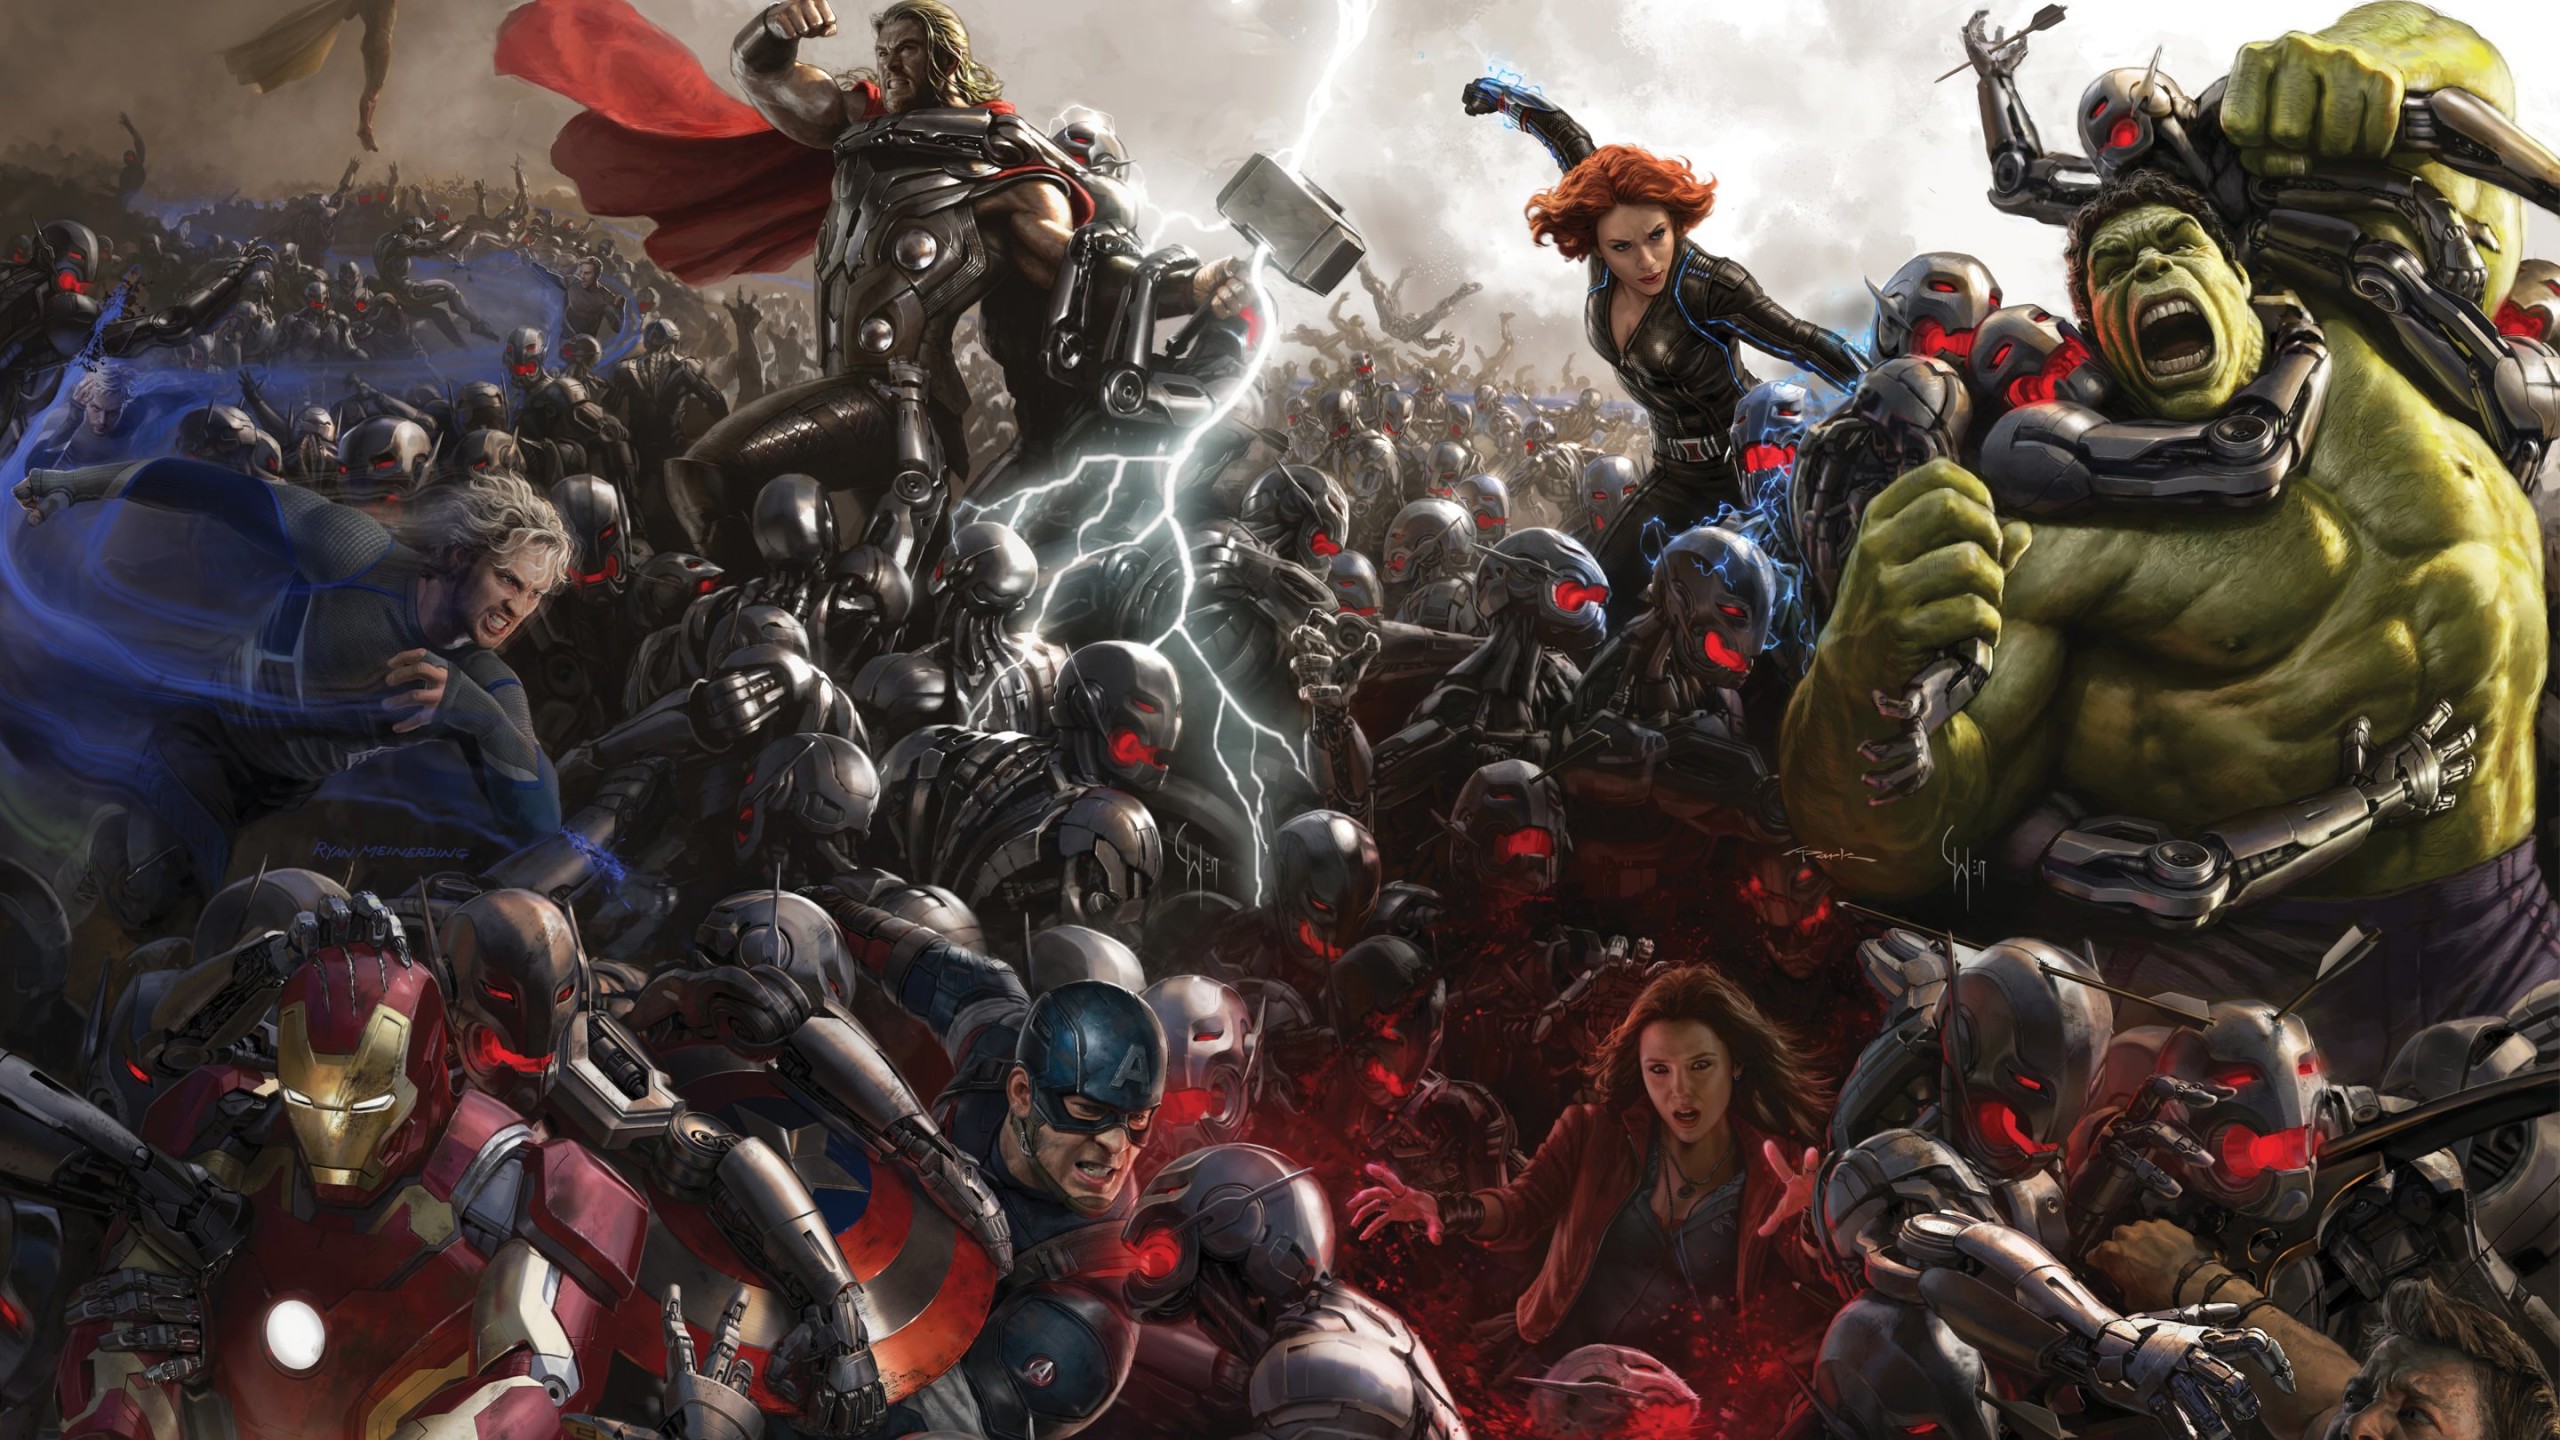 Avengers Age Of Ultron Concept Art Wallpaper for Social Media YouTube Channel Art